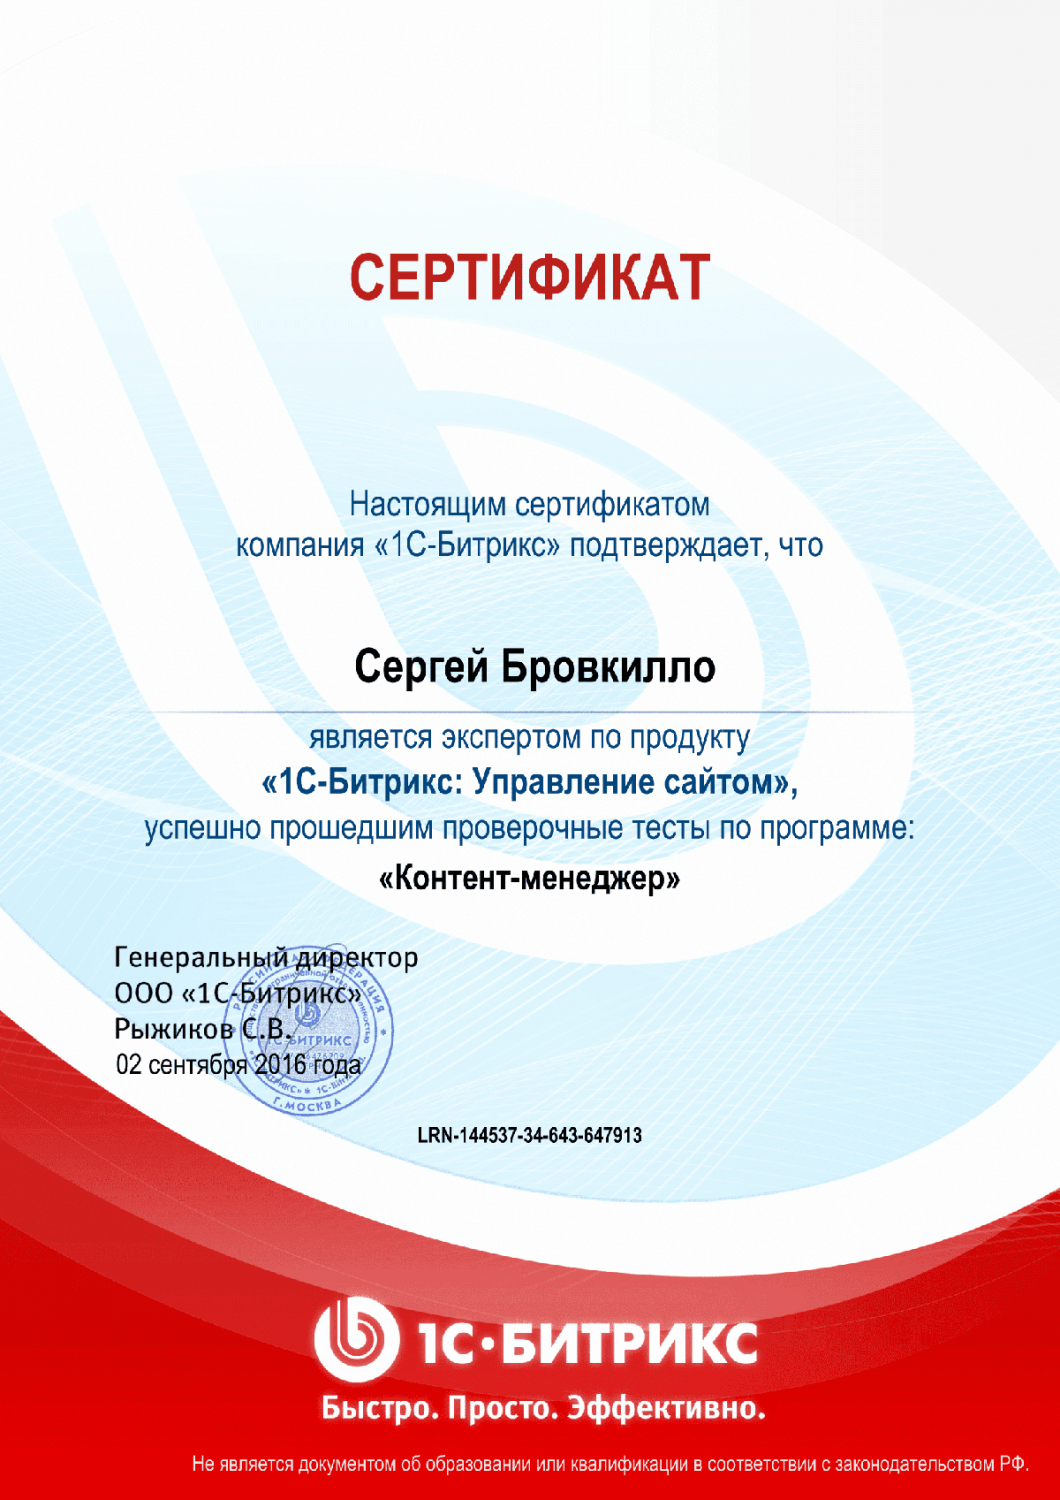 Сертификат эксперта по программе "Контент-менеджер"" в Таганрога